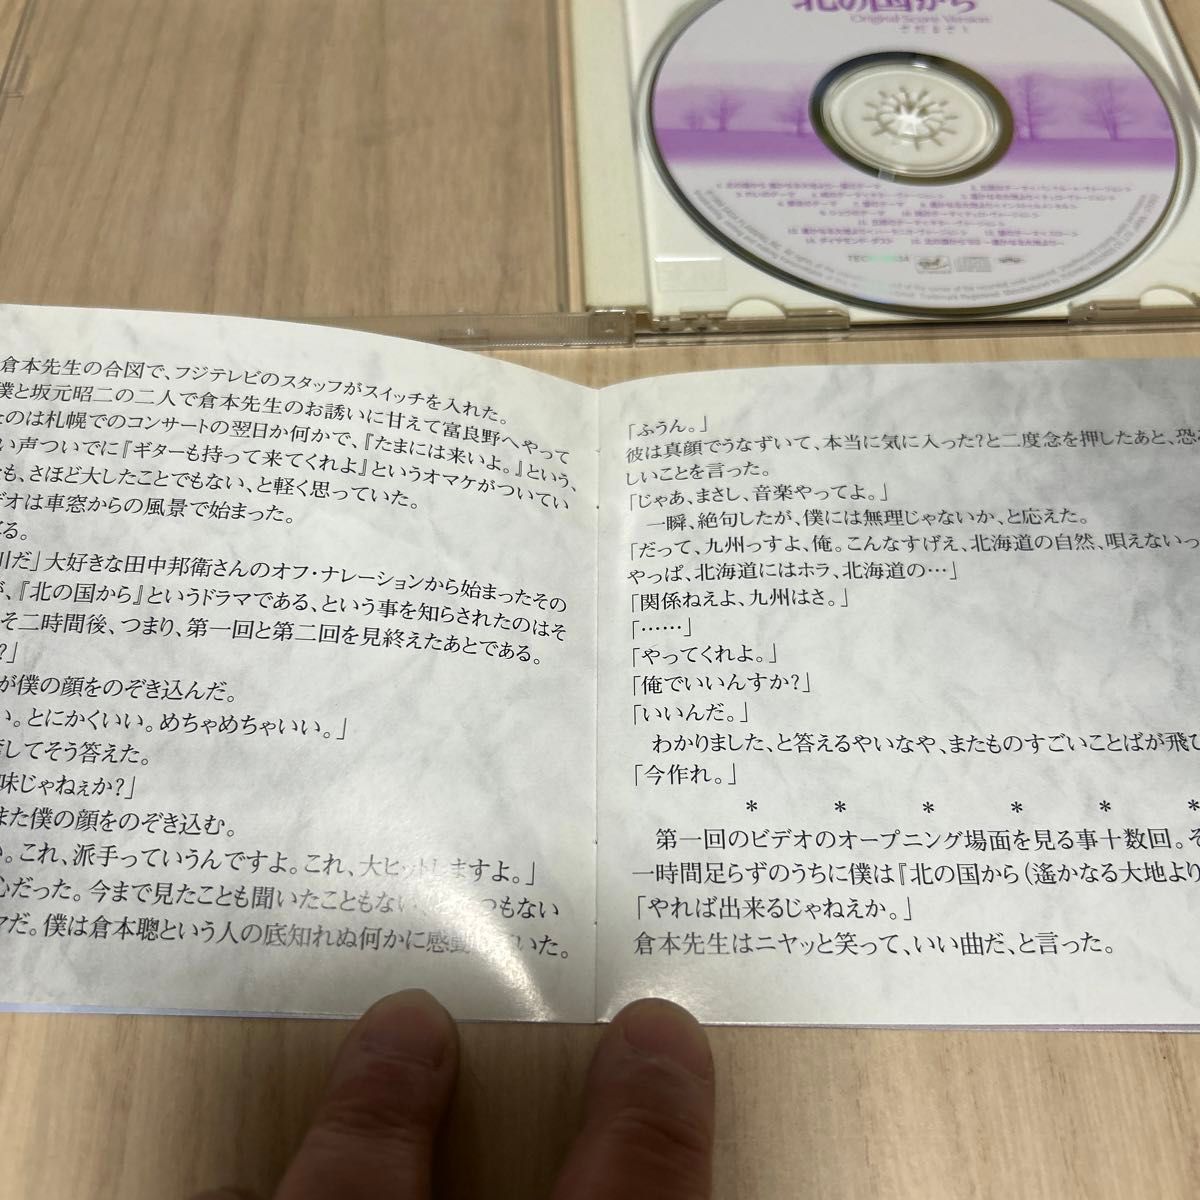 【CD】北の国からOriginal Score Version さだま さだまさし CD アルバム サントラ